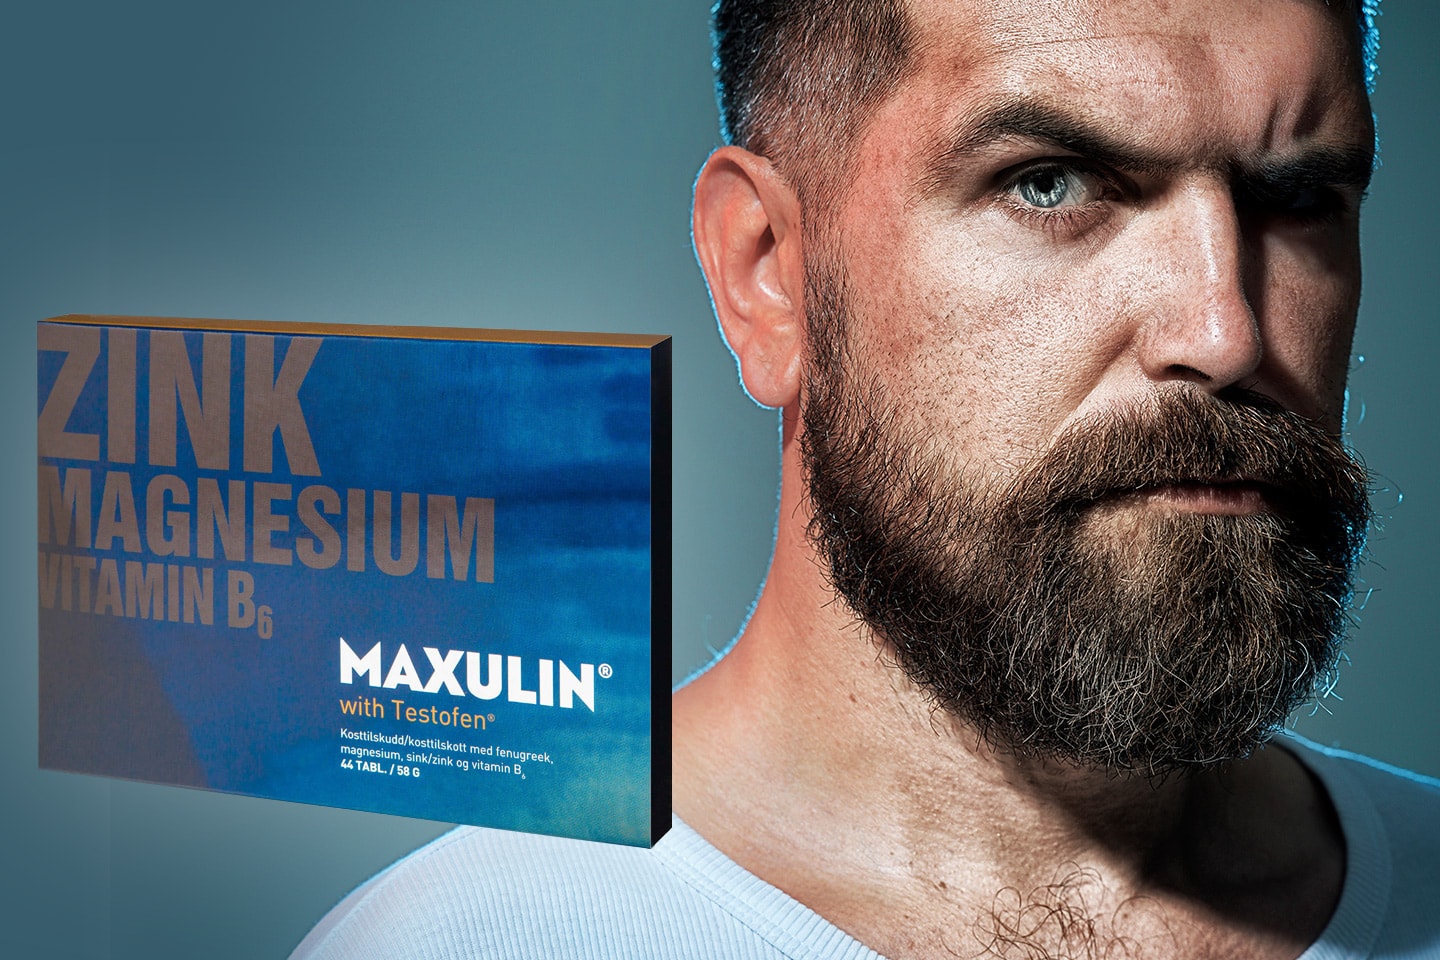 Maxulin® - Tillskott för män - Energi, testosteronnivå & muskelfunktion (1 av 3)